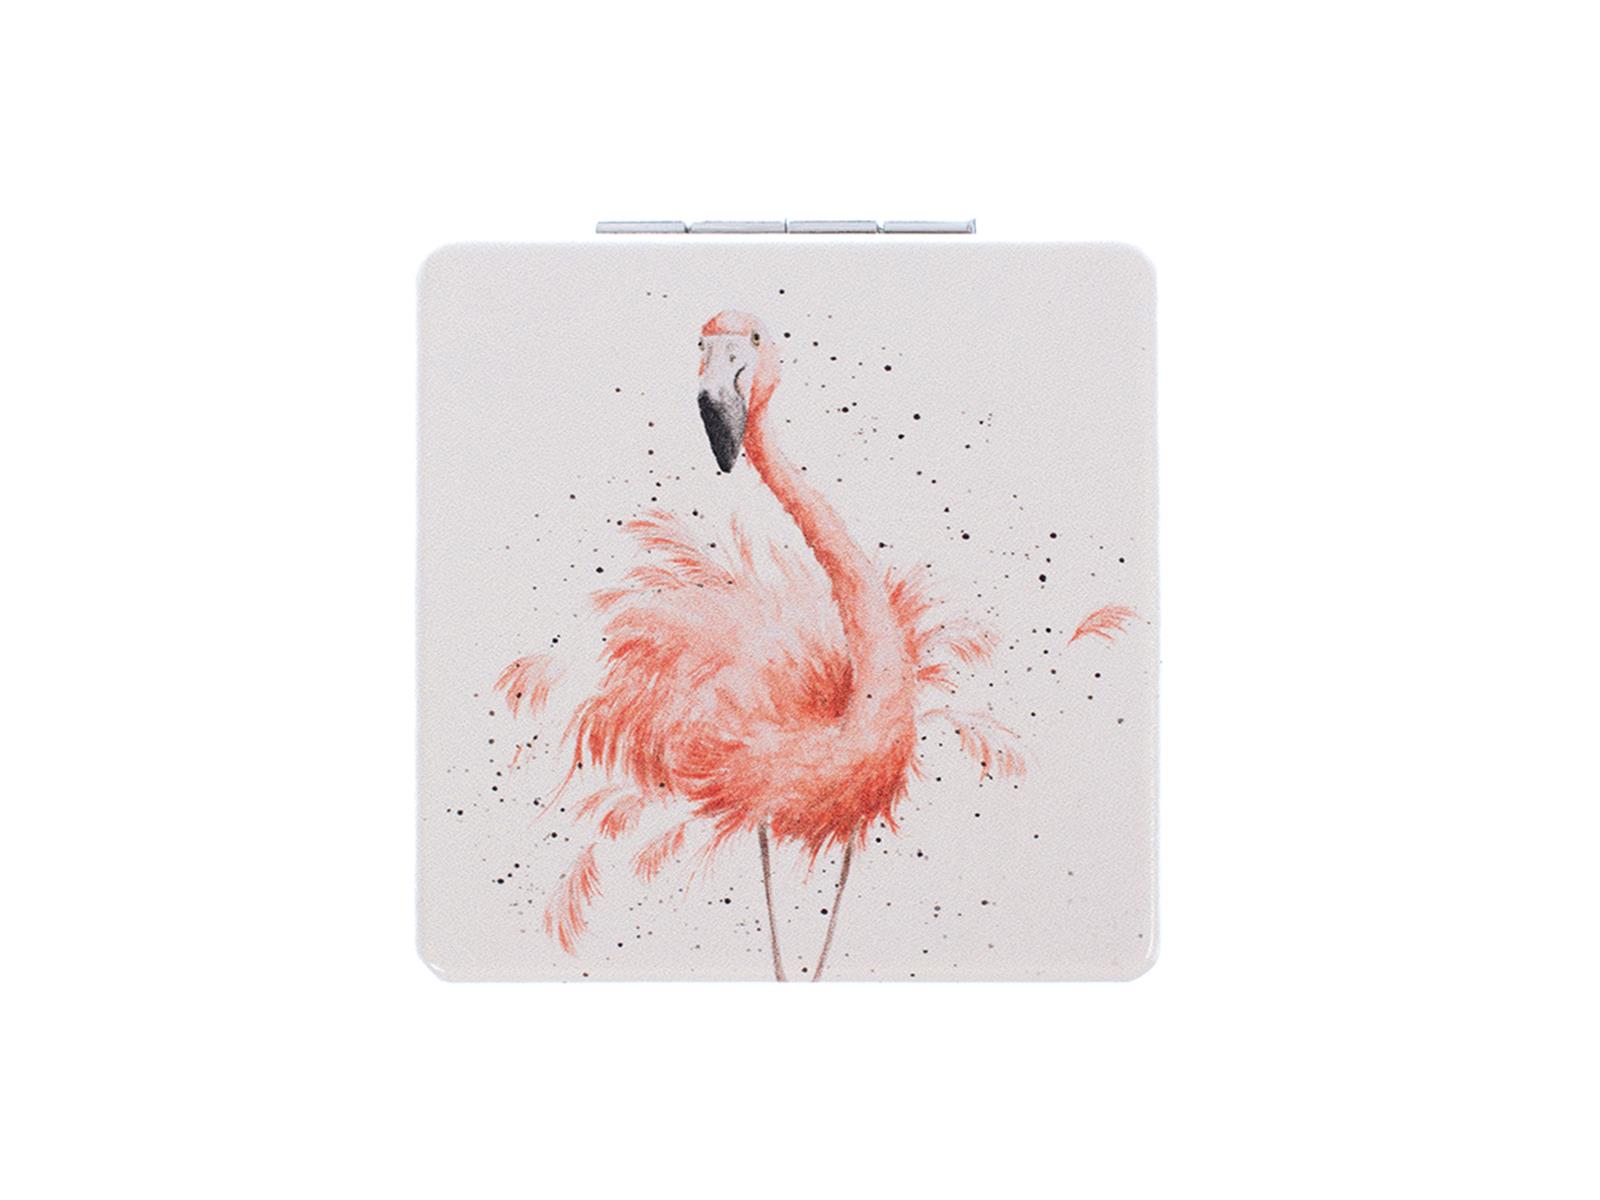 Wrendale Taschenspiegel zum klappen in Geschenkschachtel, Motiv Flamingo,hellgrau,7x7 cm